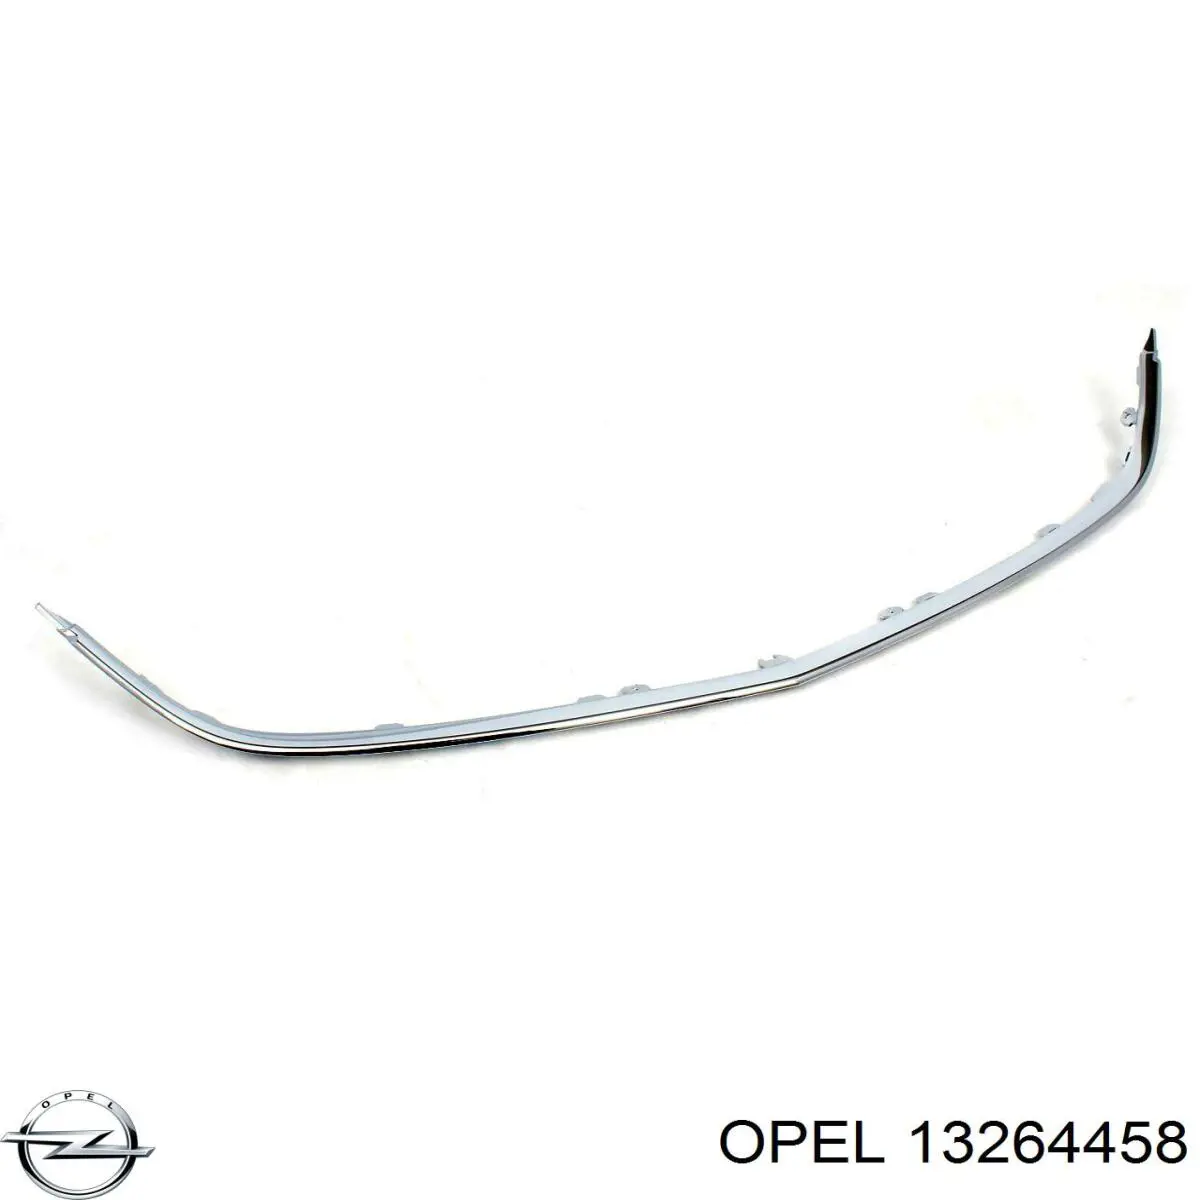 13264458 Opel moldura de rejilla de radiador inferior